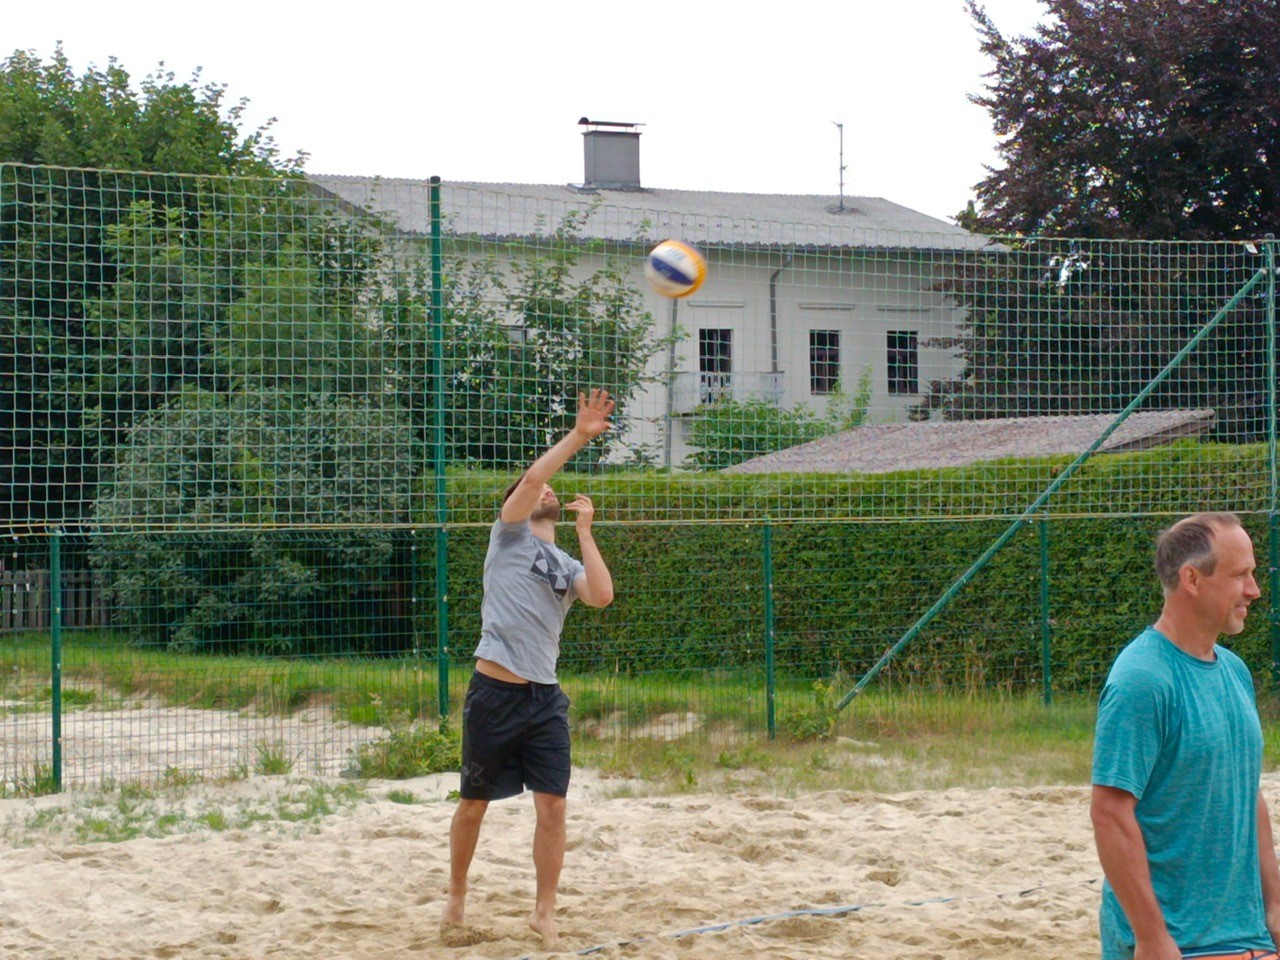 Volleyballturnier am vorletzten Schultag--Bild-Nr. 3